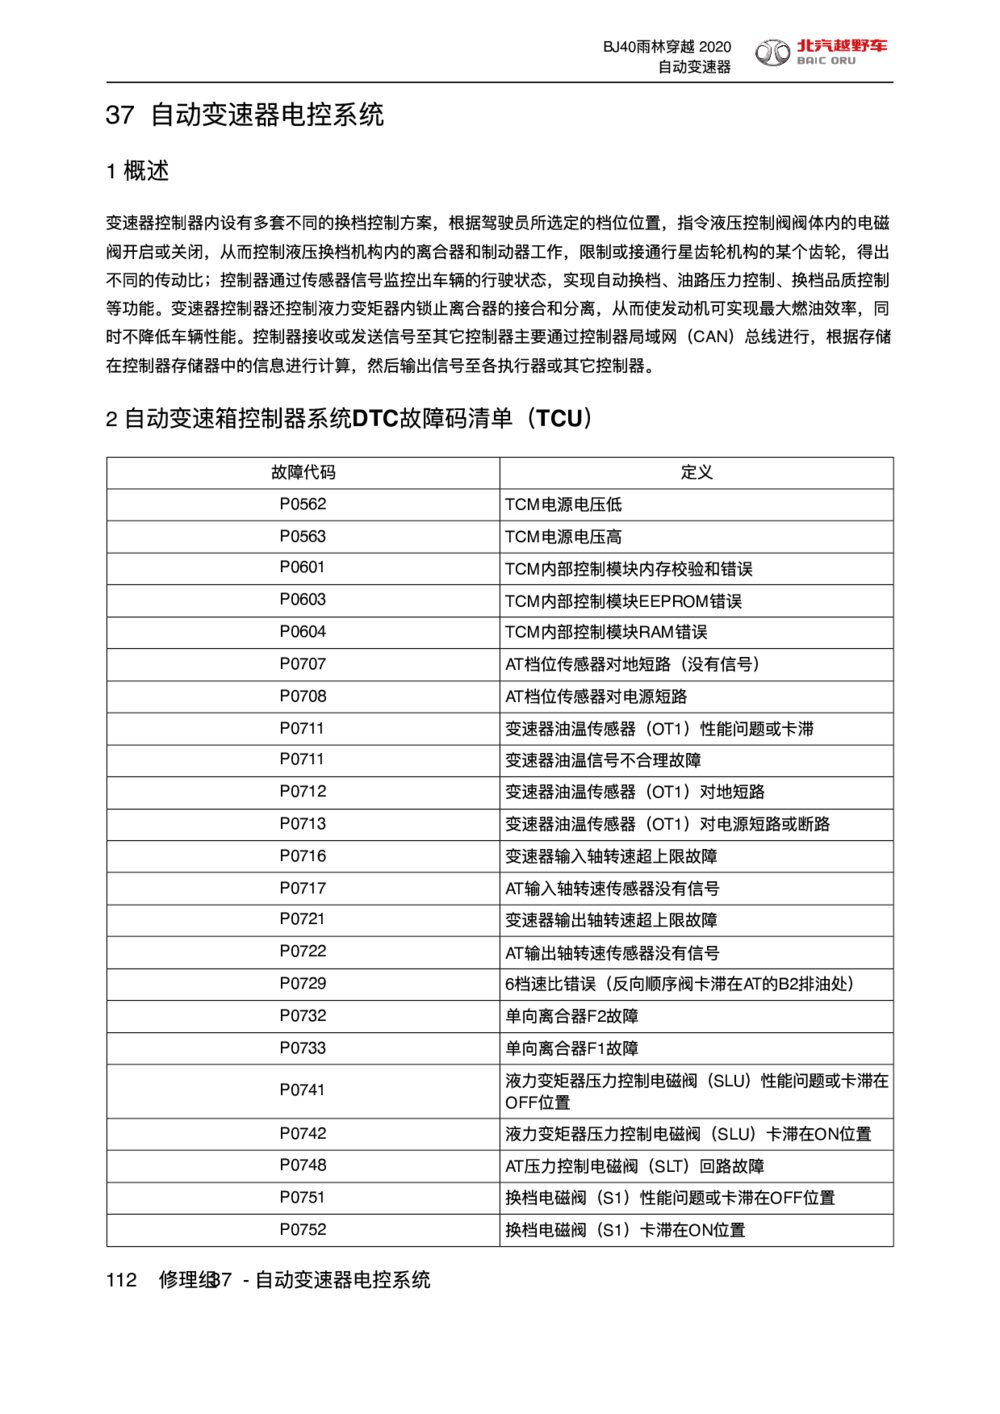 2020款北京BJ40自动变速器电控系统概述1